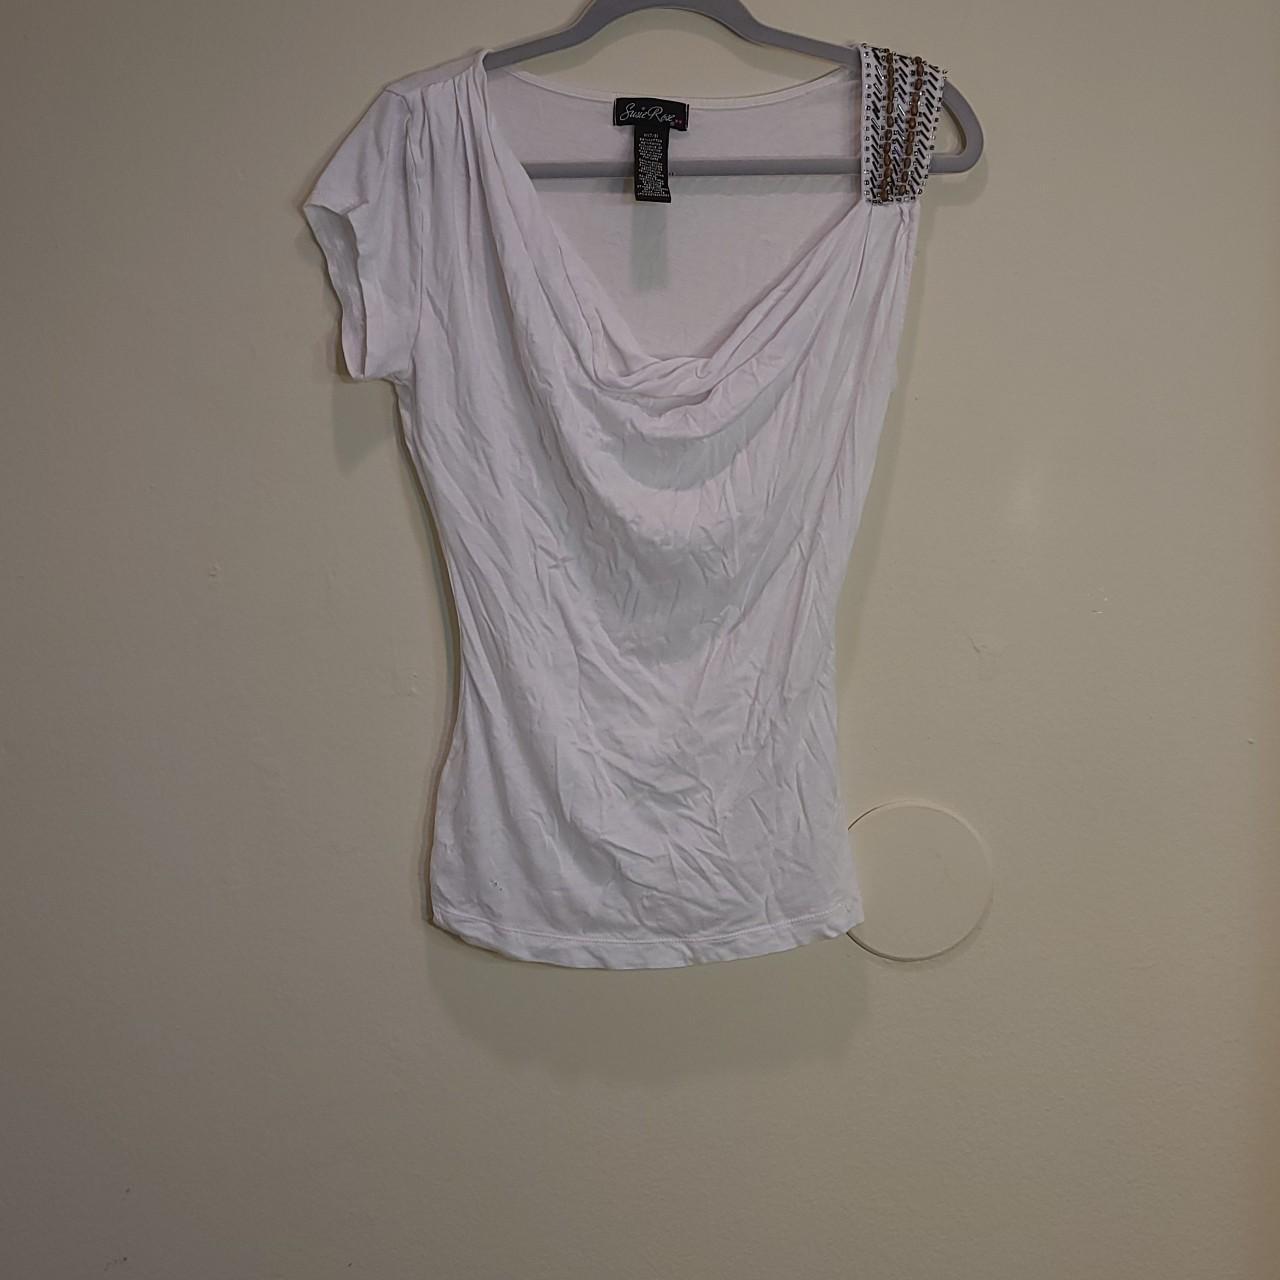 Susie Rose Women's White T-shirt